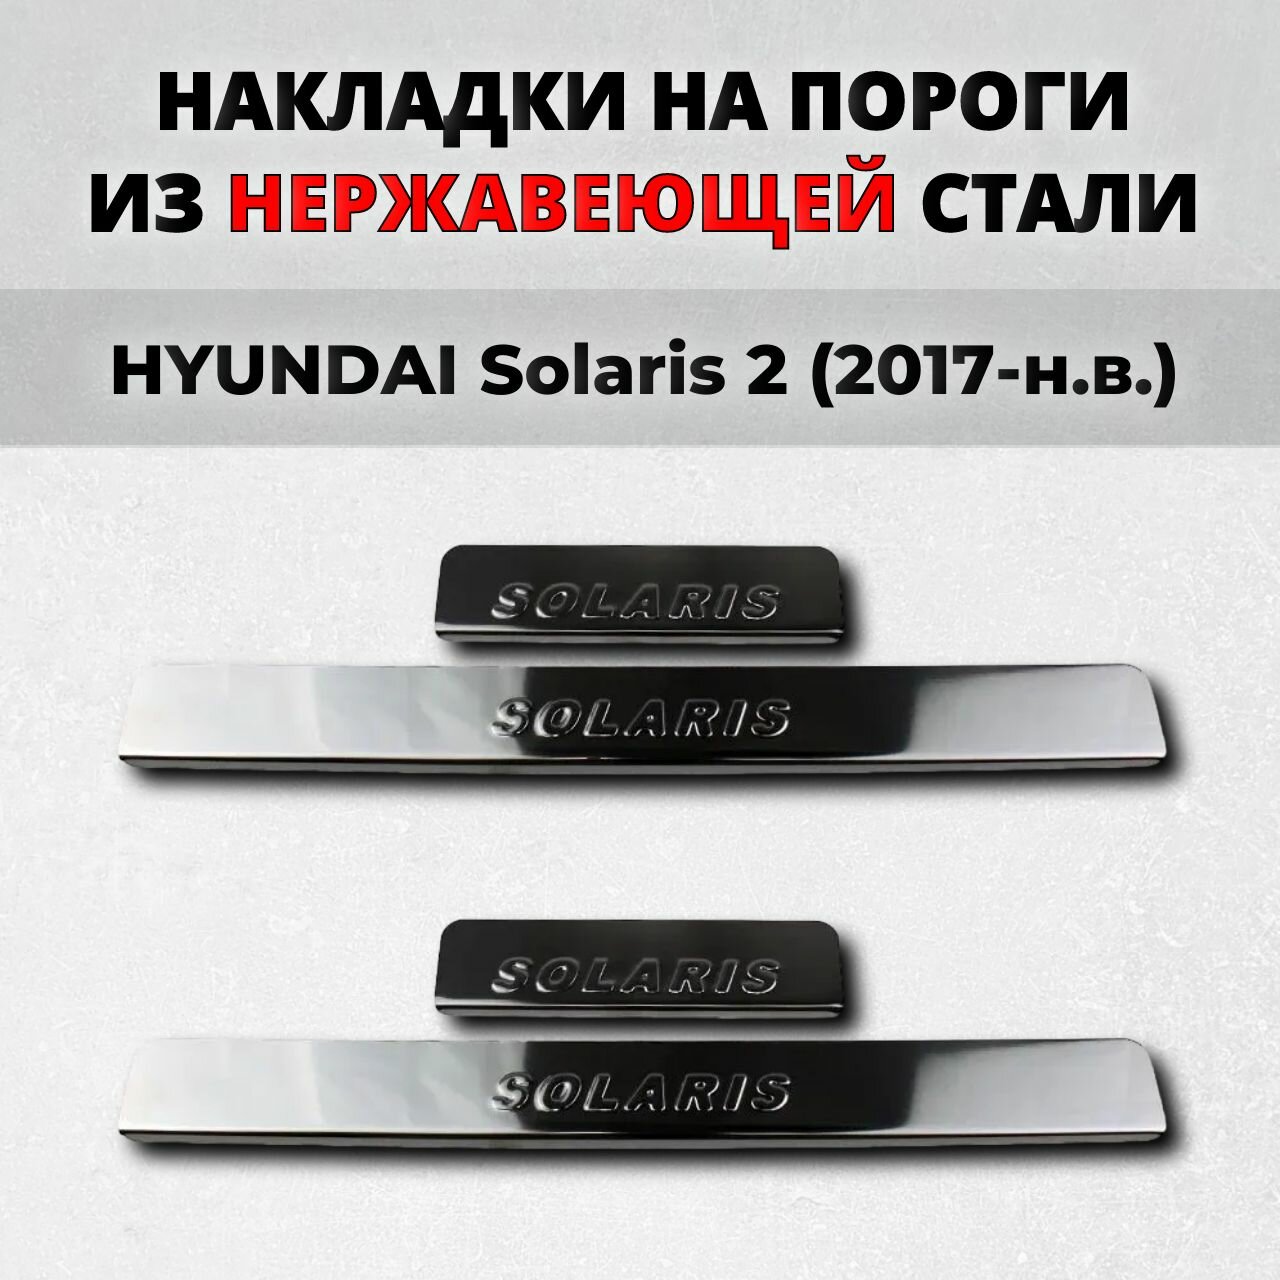 Накладки на пороги Хендай Солярис 2 поколение 2017-н. в. из нержавеющей стали HYUNDAI Solaris